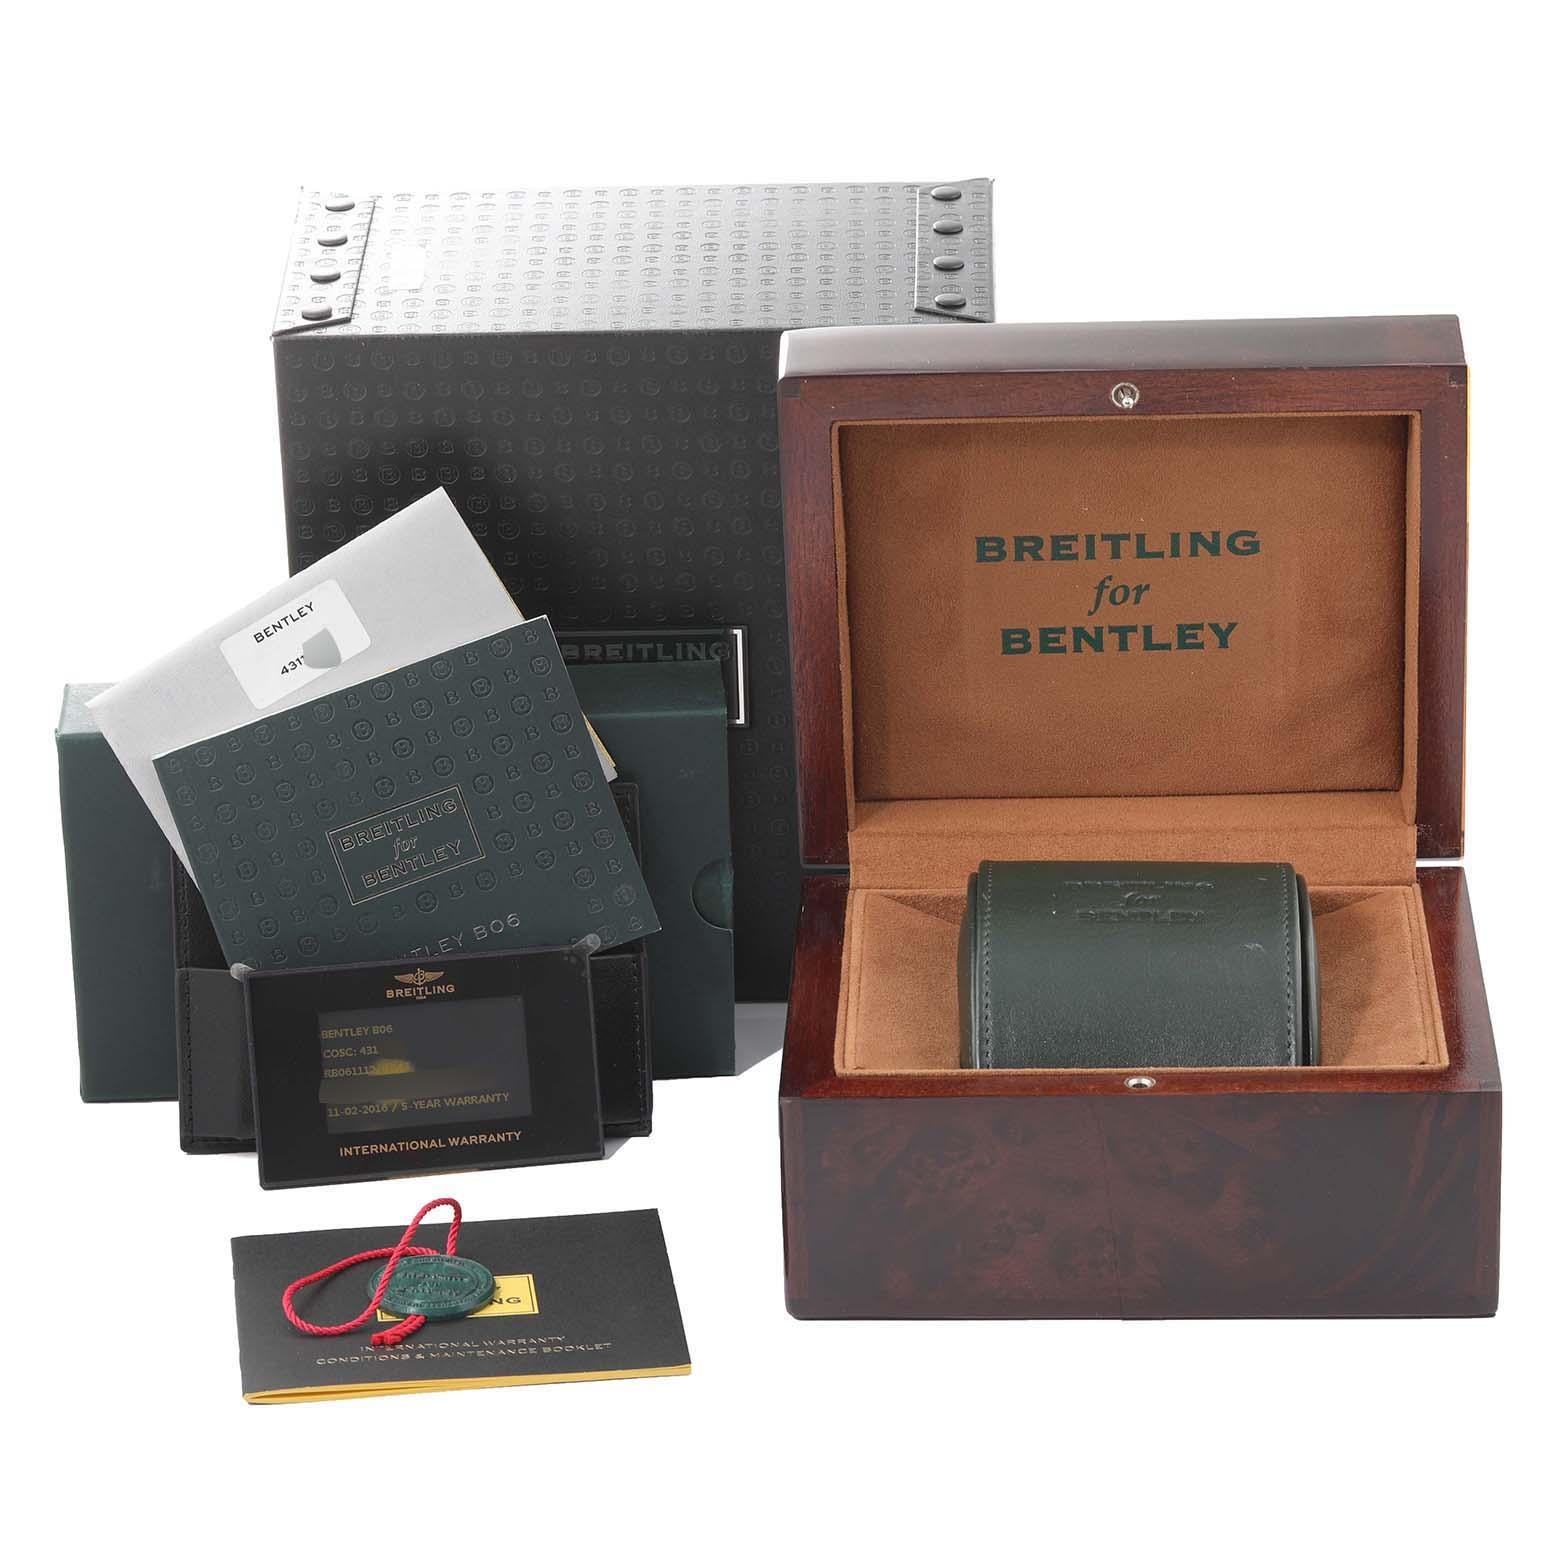 Breitling Bentley B06 Schwarzes Zifferblatt Rose Gold Herrenuhr RB0611 Box Card. Automatisches, offiziell zertifiziertes Chronometerwerk mit Selbstaufzug. Chronographenfunktion. Gehäuse aus 18 Karat Roségold mit einem Durchmesser von 49 mm.